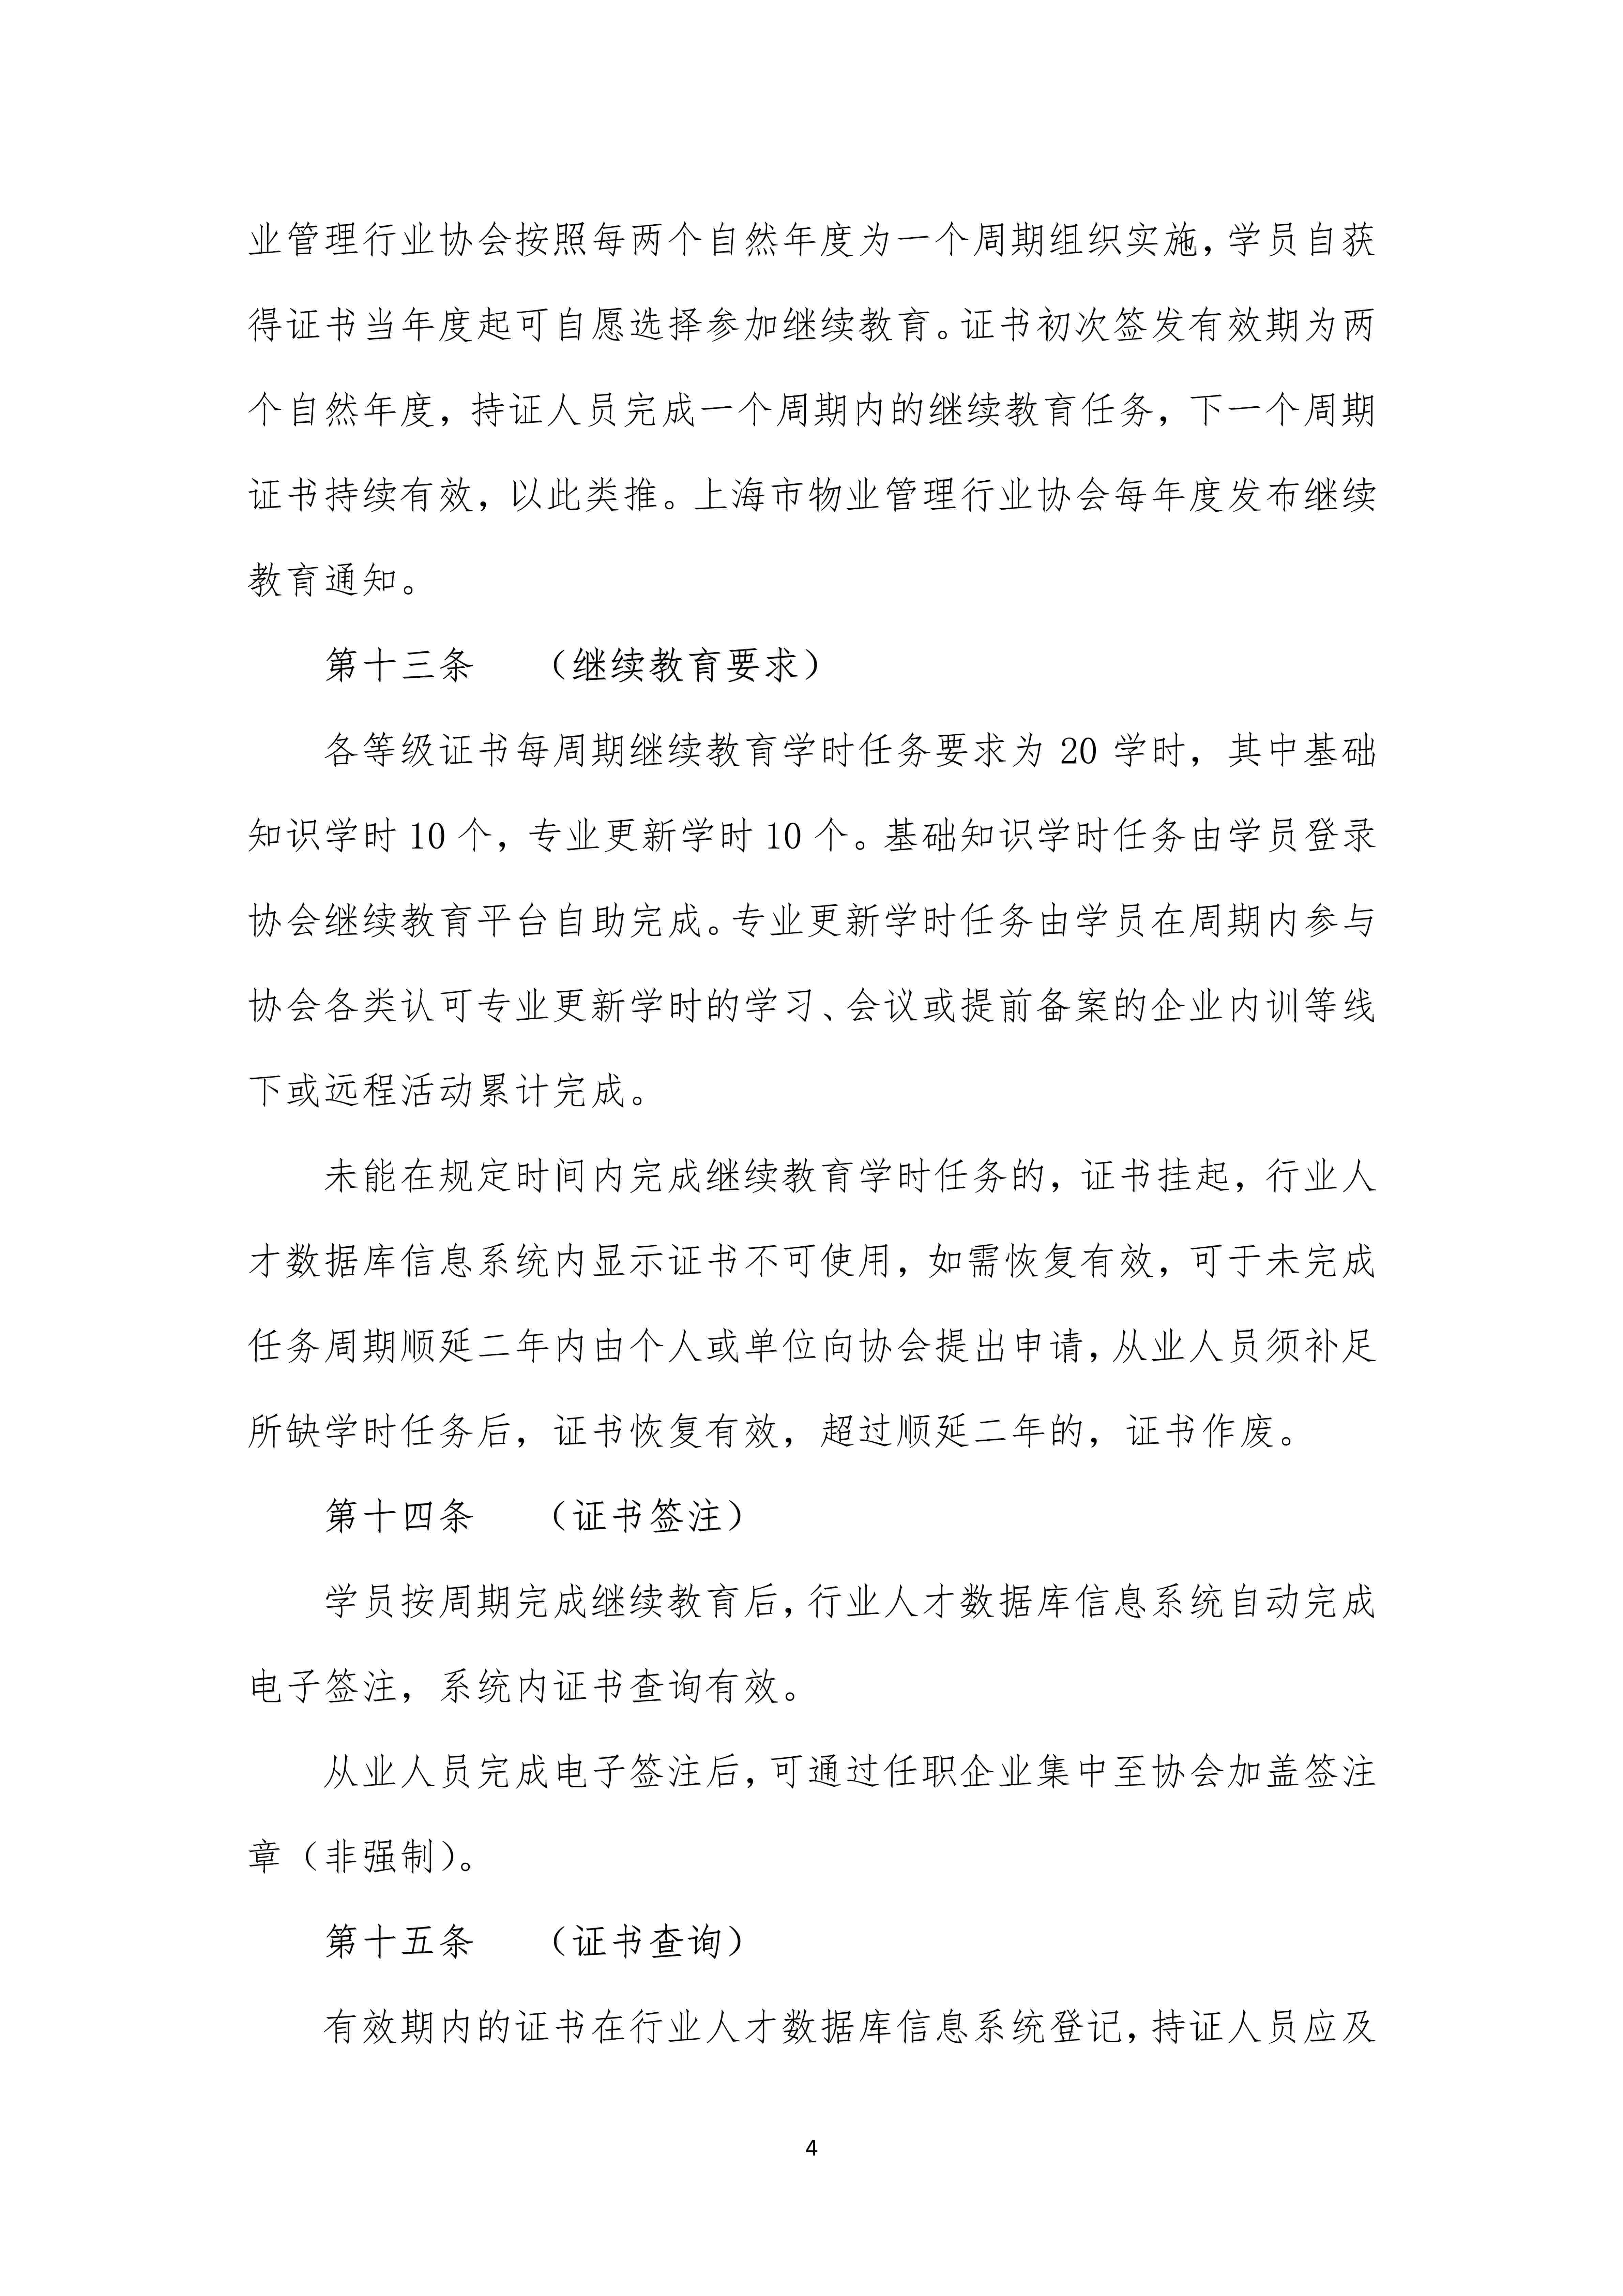 上海市物业管理行业物业经理系列职业水平证书管理办法（定稿）_4.jpg-2022-07-06-09-56-34-093.jpg